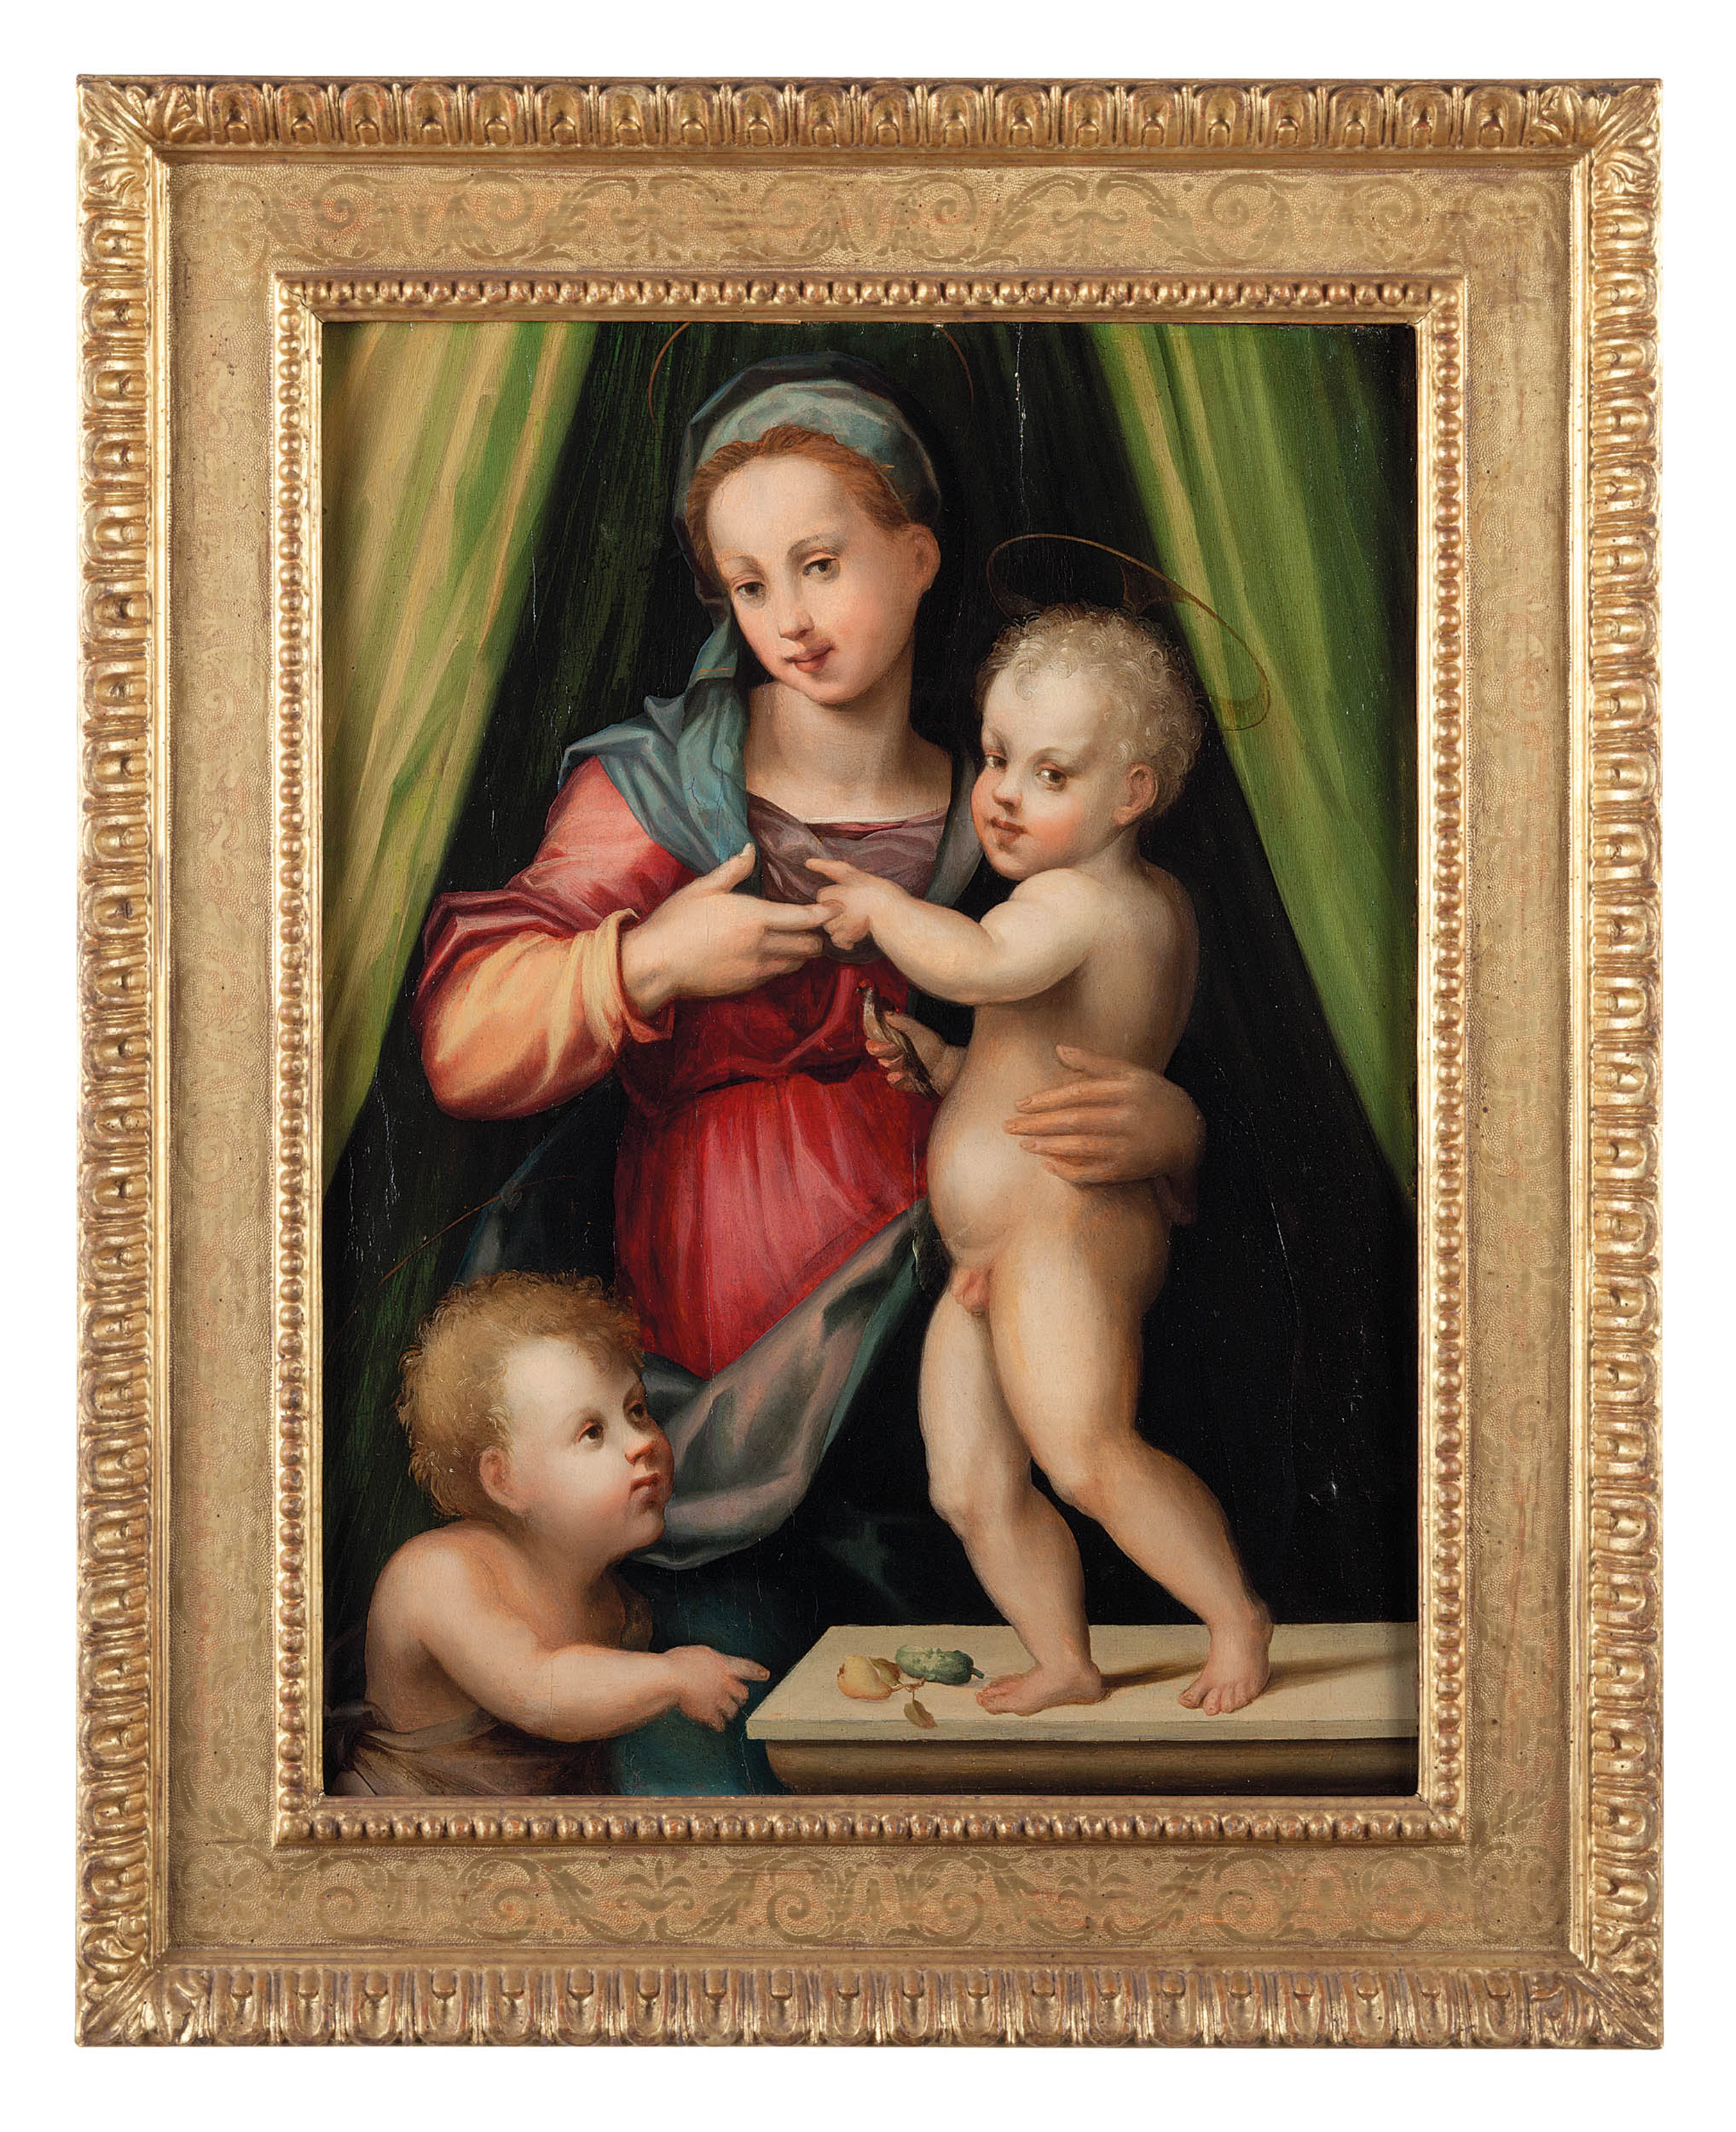 Автор картины мадонна с младенцем. Доменико Пулиго Мадонна с младенцем. Доменико Пулиго (1492—1527). Андреа дель Сатро Мадонна с млпденцем. Луис де Моралес Мадонна с младенцем.